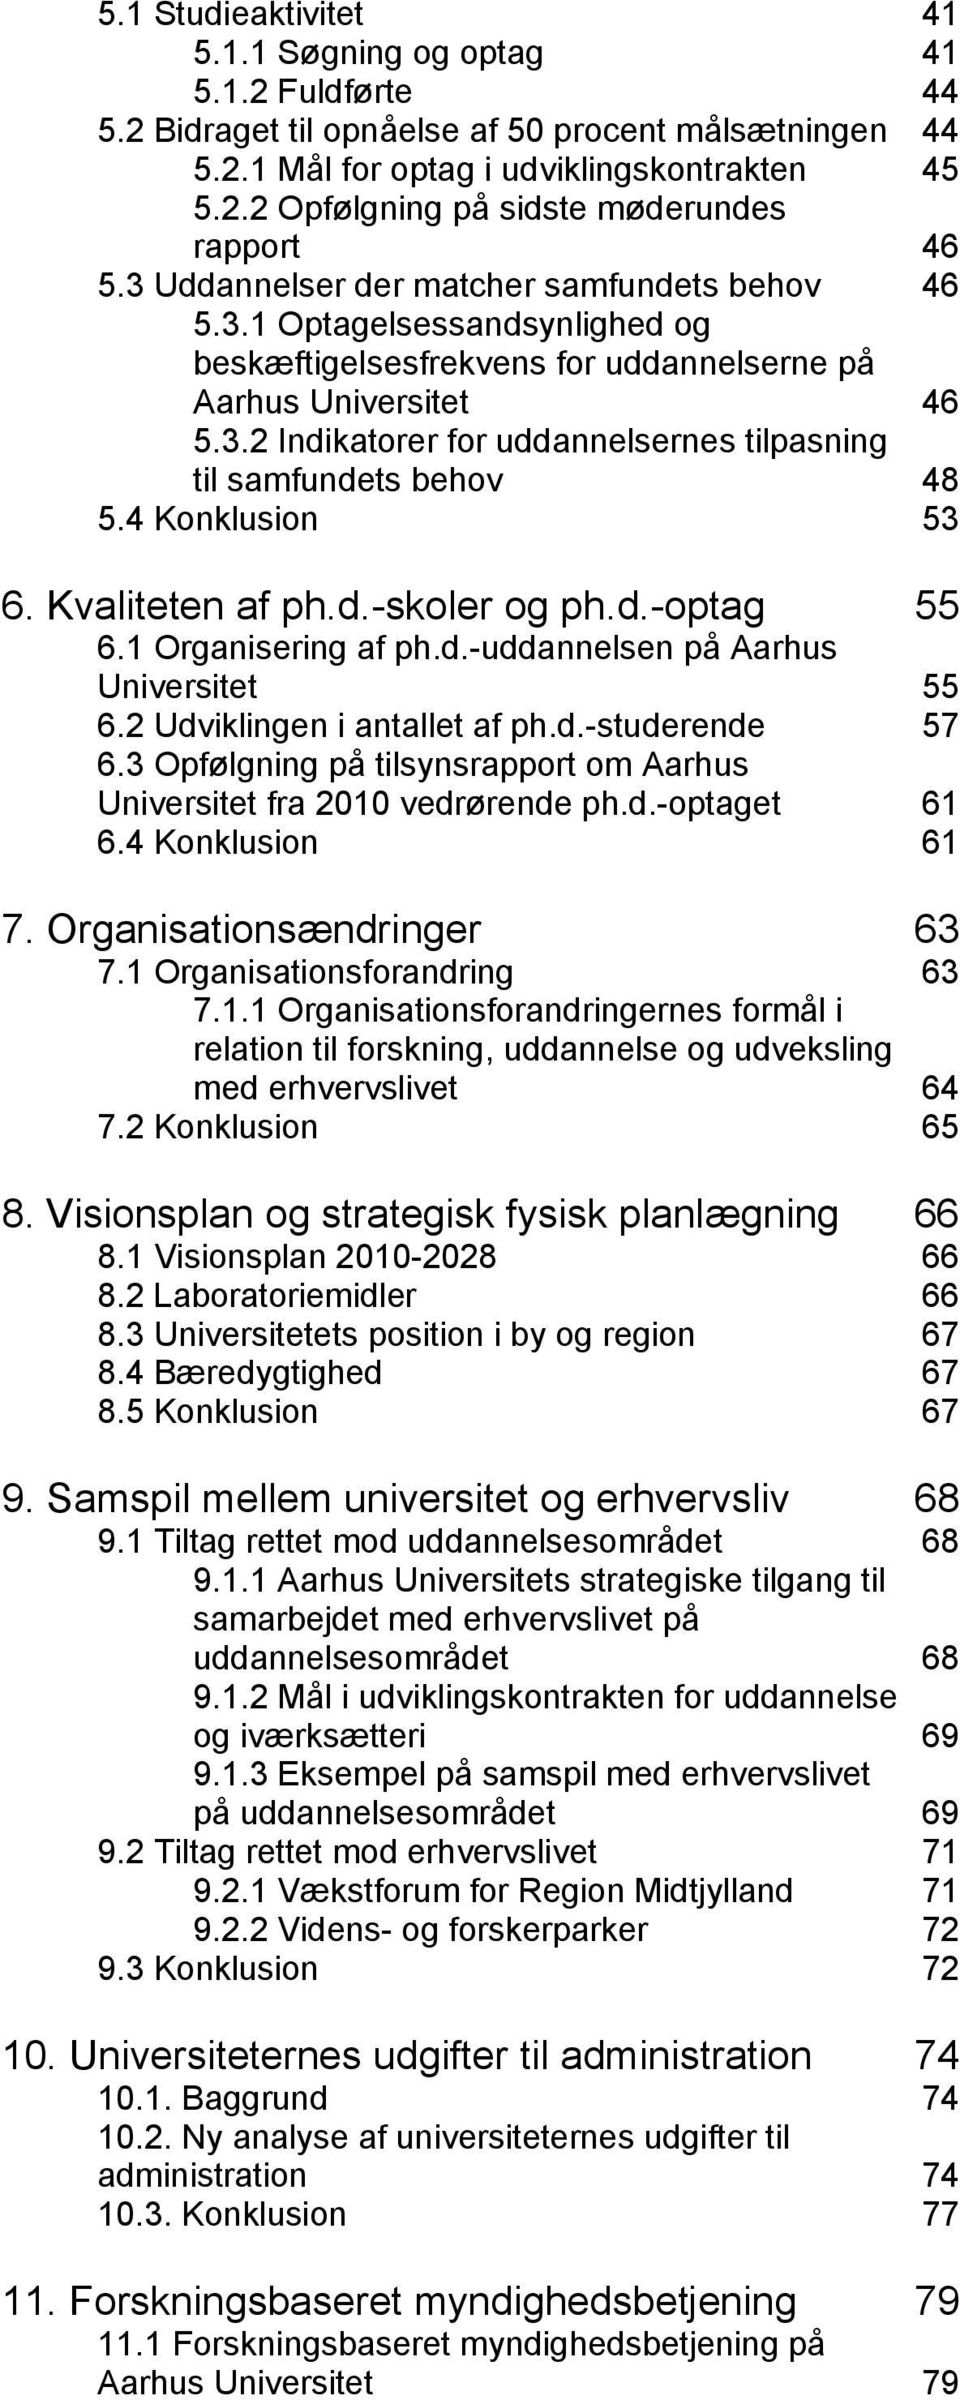 4 Konklusion 53 6. Kvaliteten af ph.d.-skoler og ph.d.-optag 55 6.1 Organisering af ph.d.-uddannelsen på Aarhus Universitet 55 6.2 Udviklingen i antallet af ph.d.-studerende 57 6.